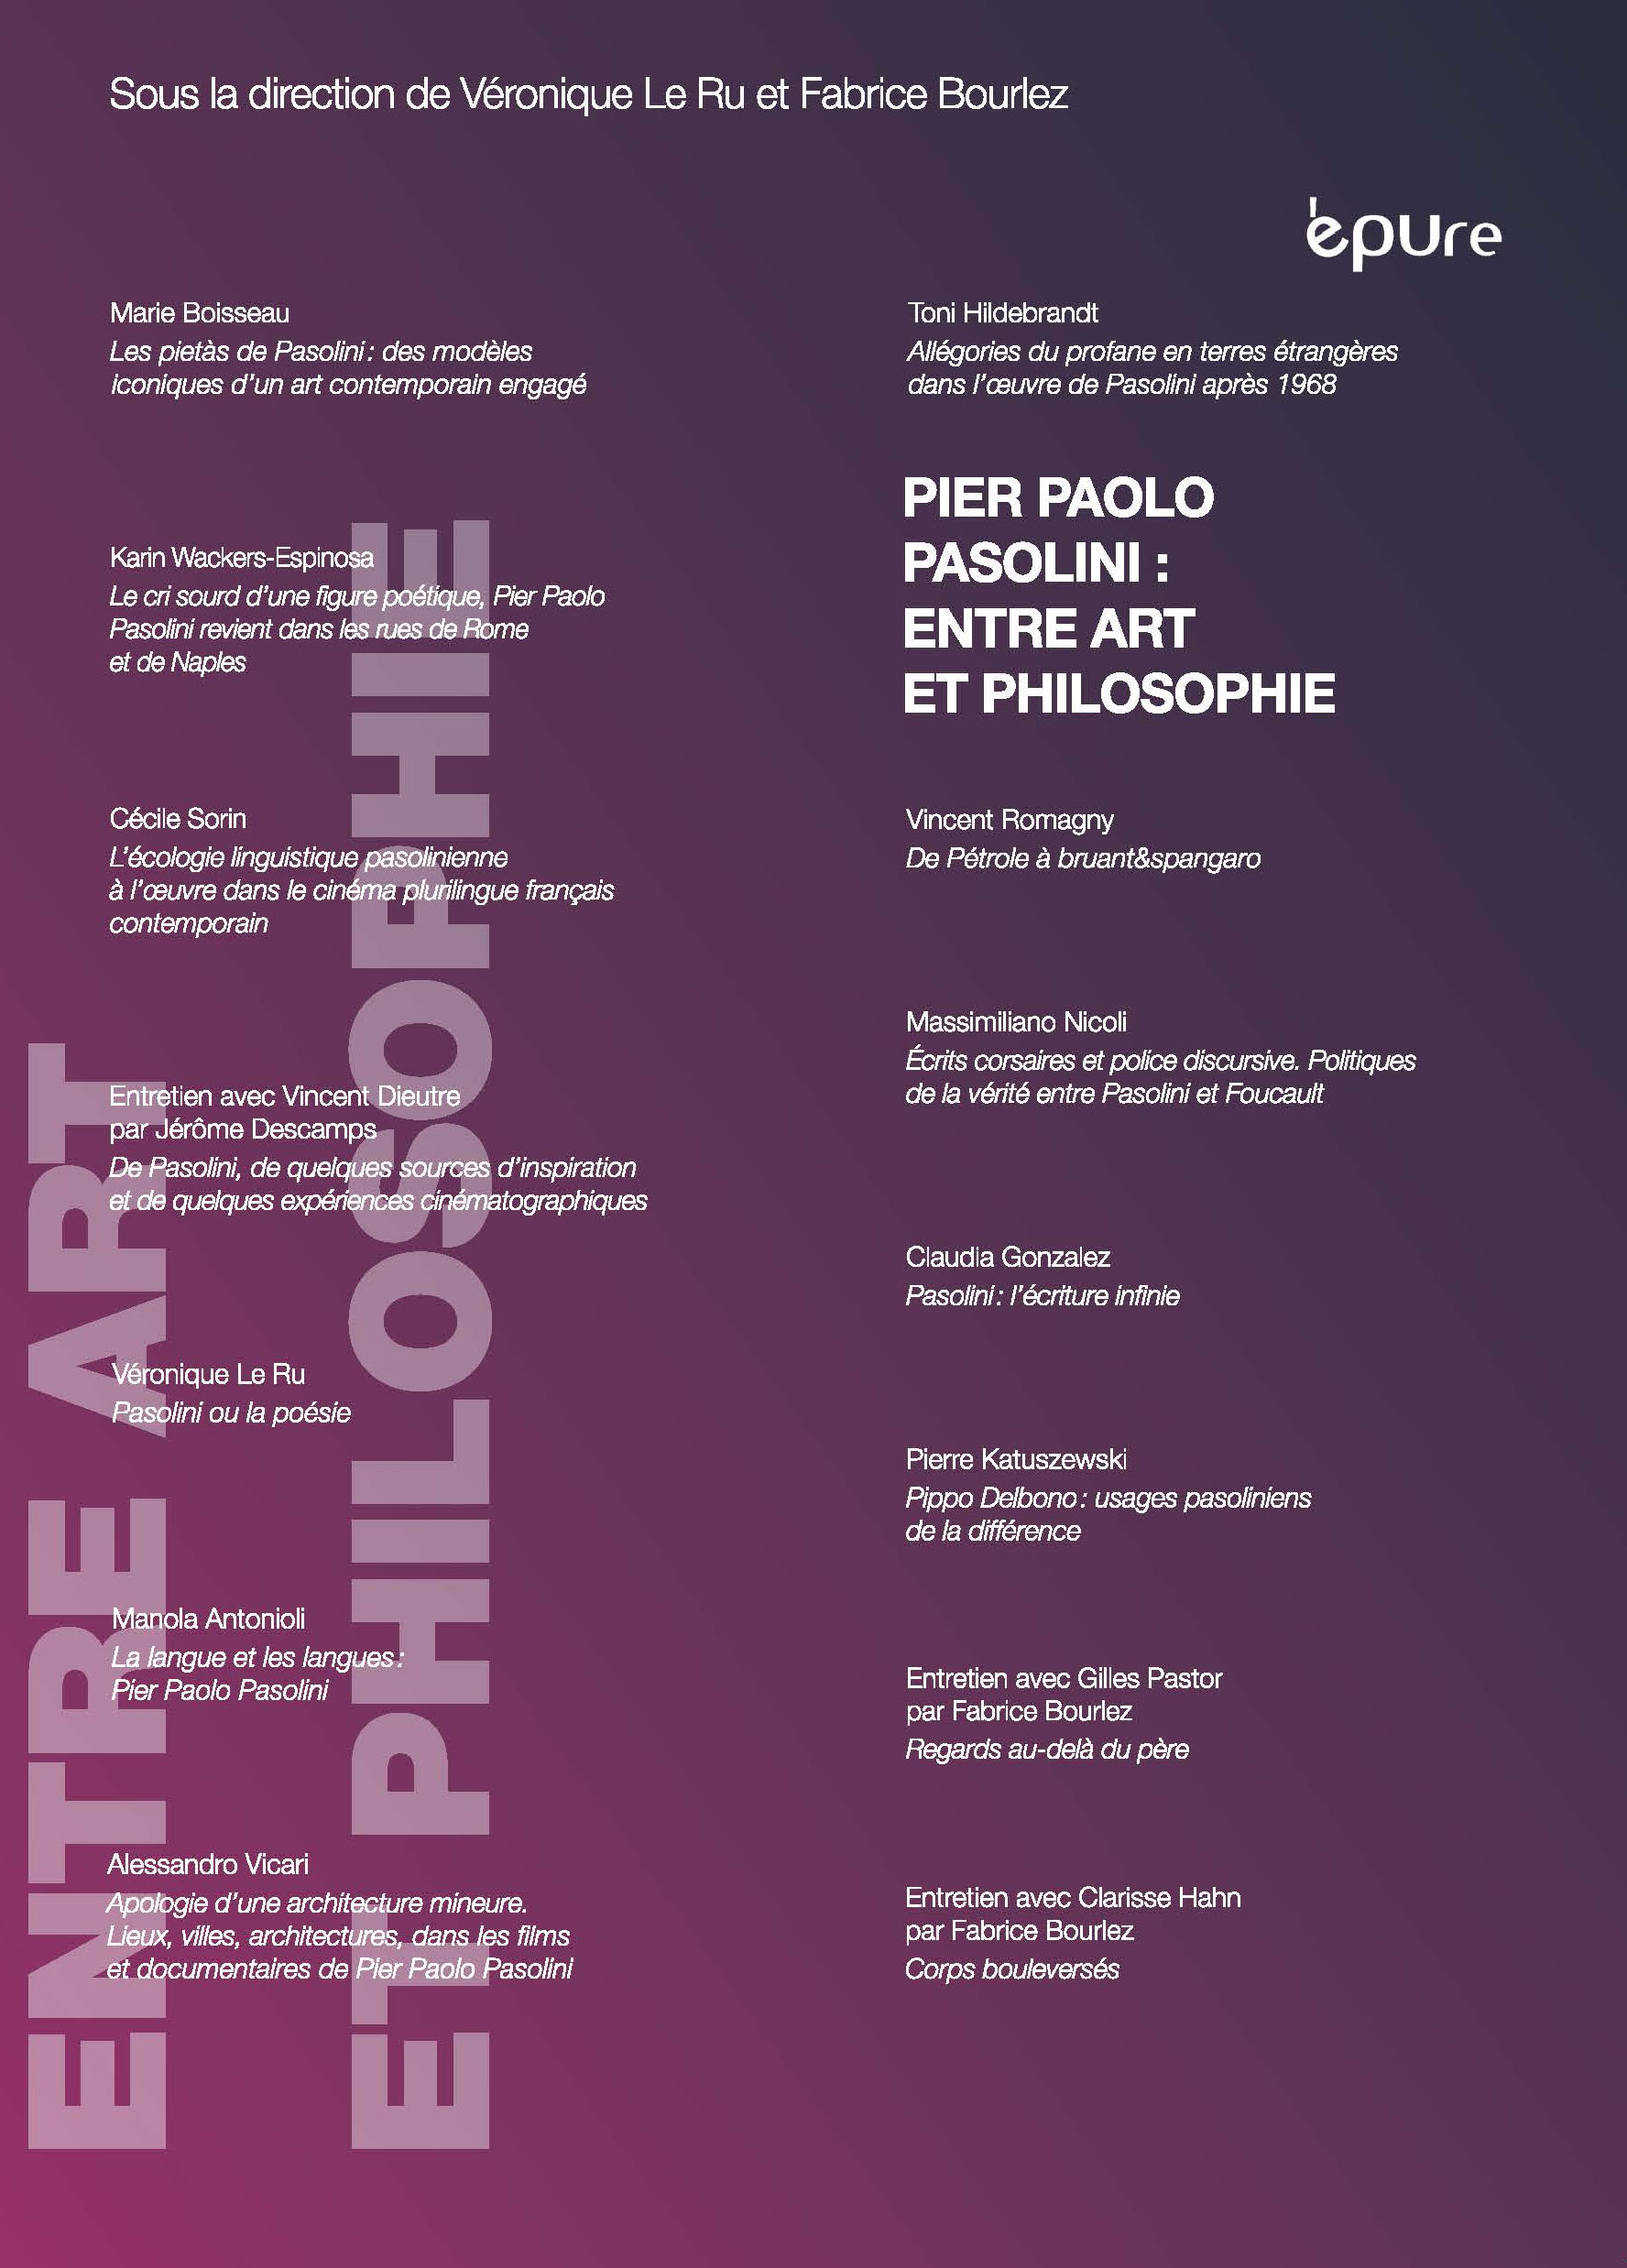 Pier Paolo Pasolini entre art et philosophie